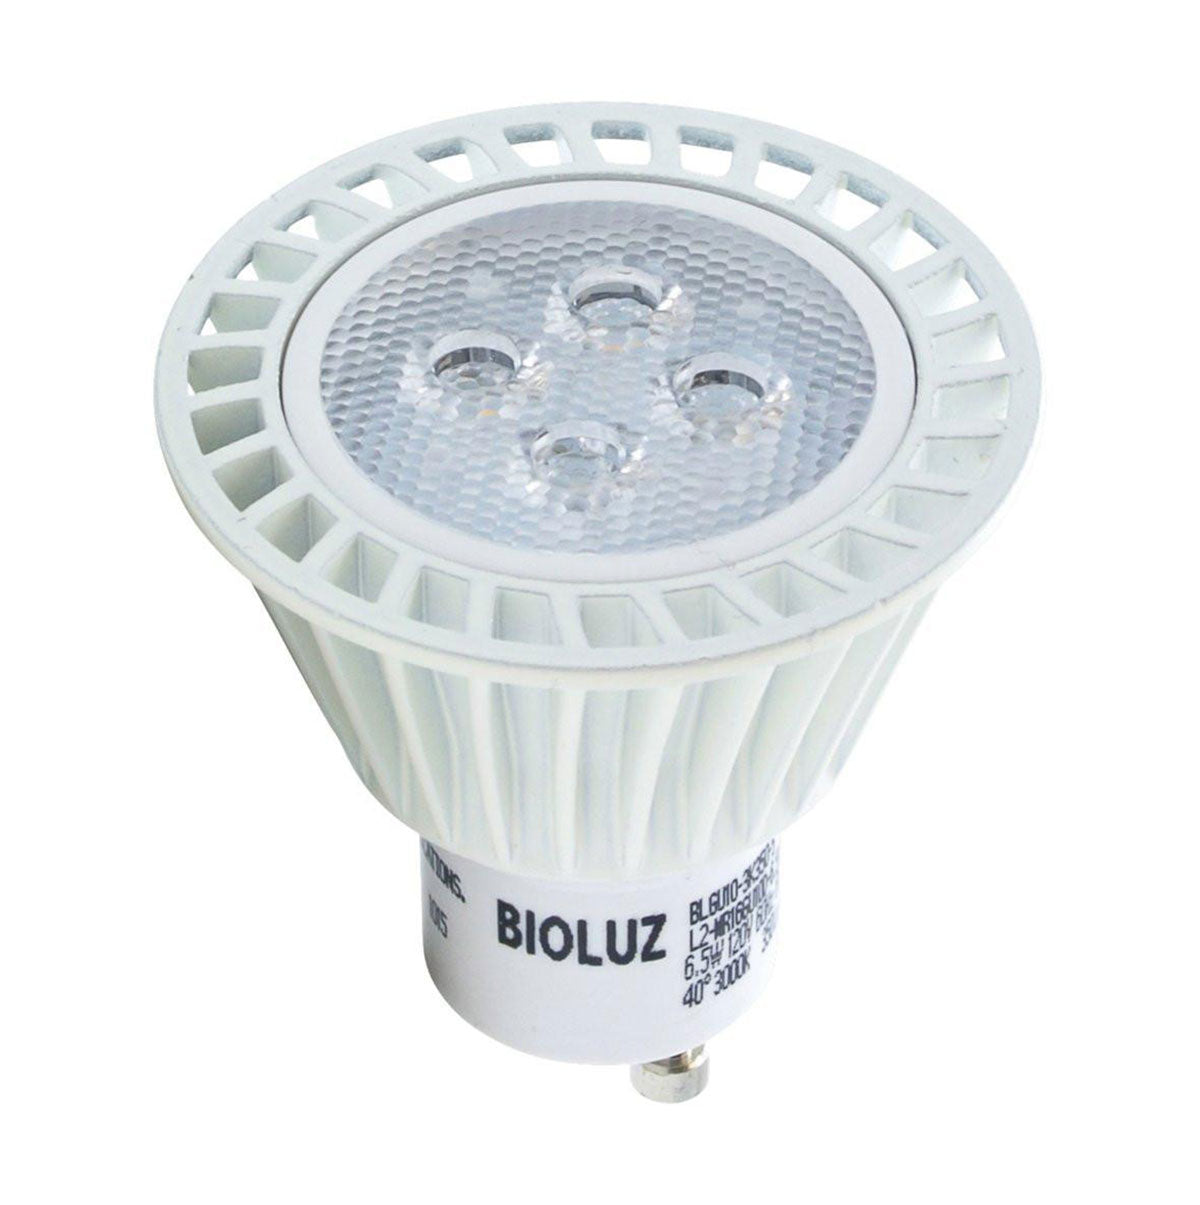 Bioluz LED Dimmable GU10 LED Bulbs